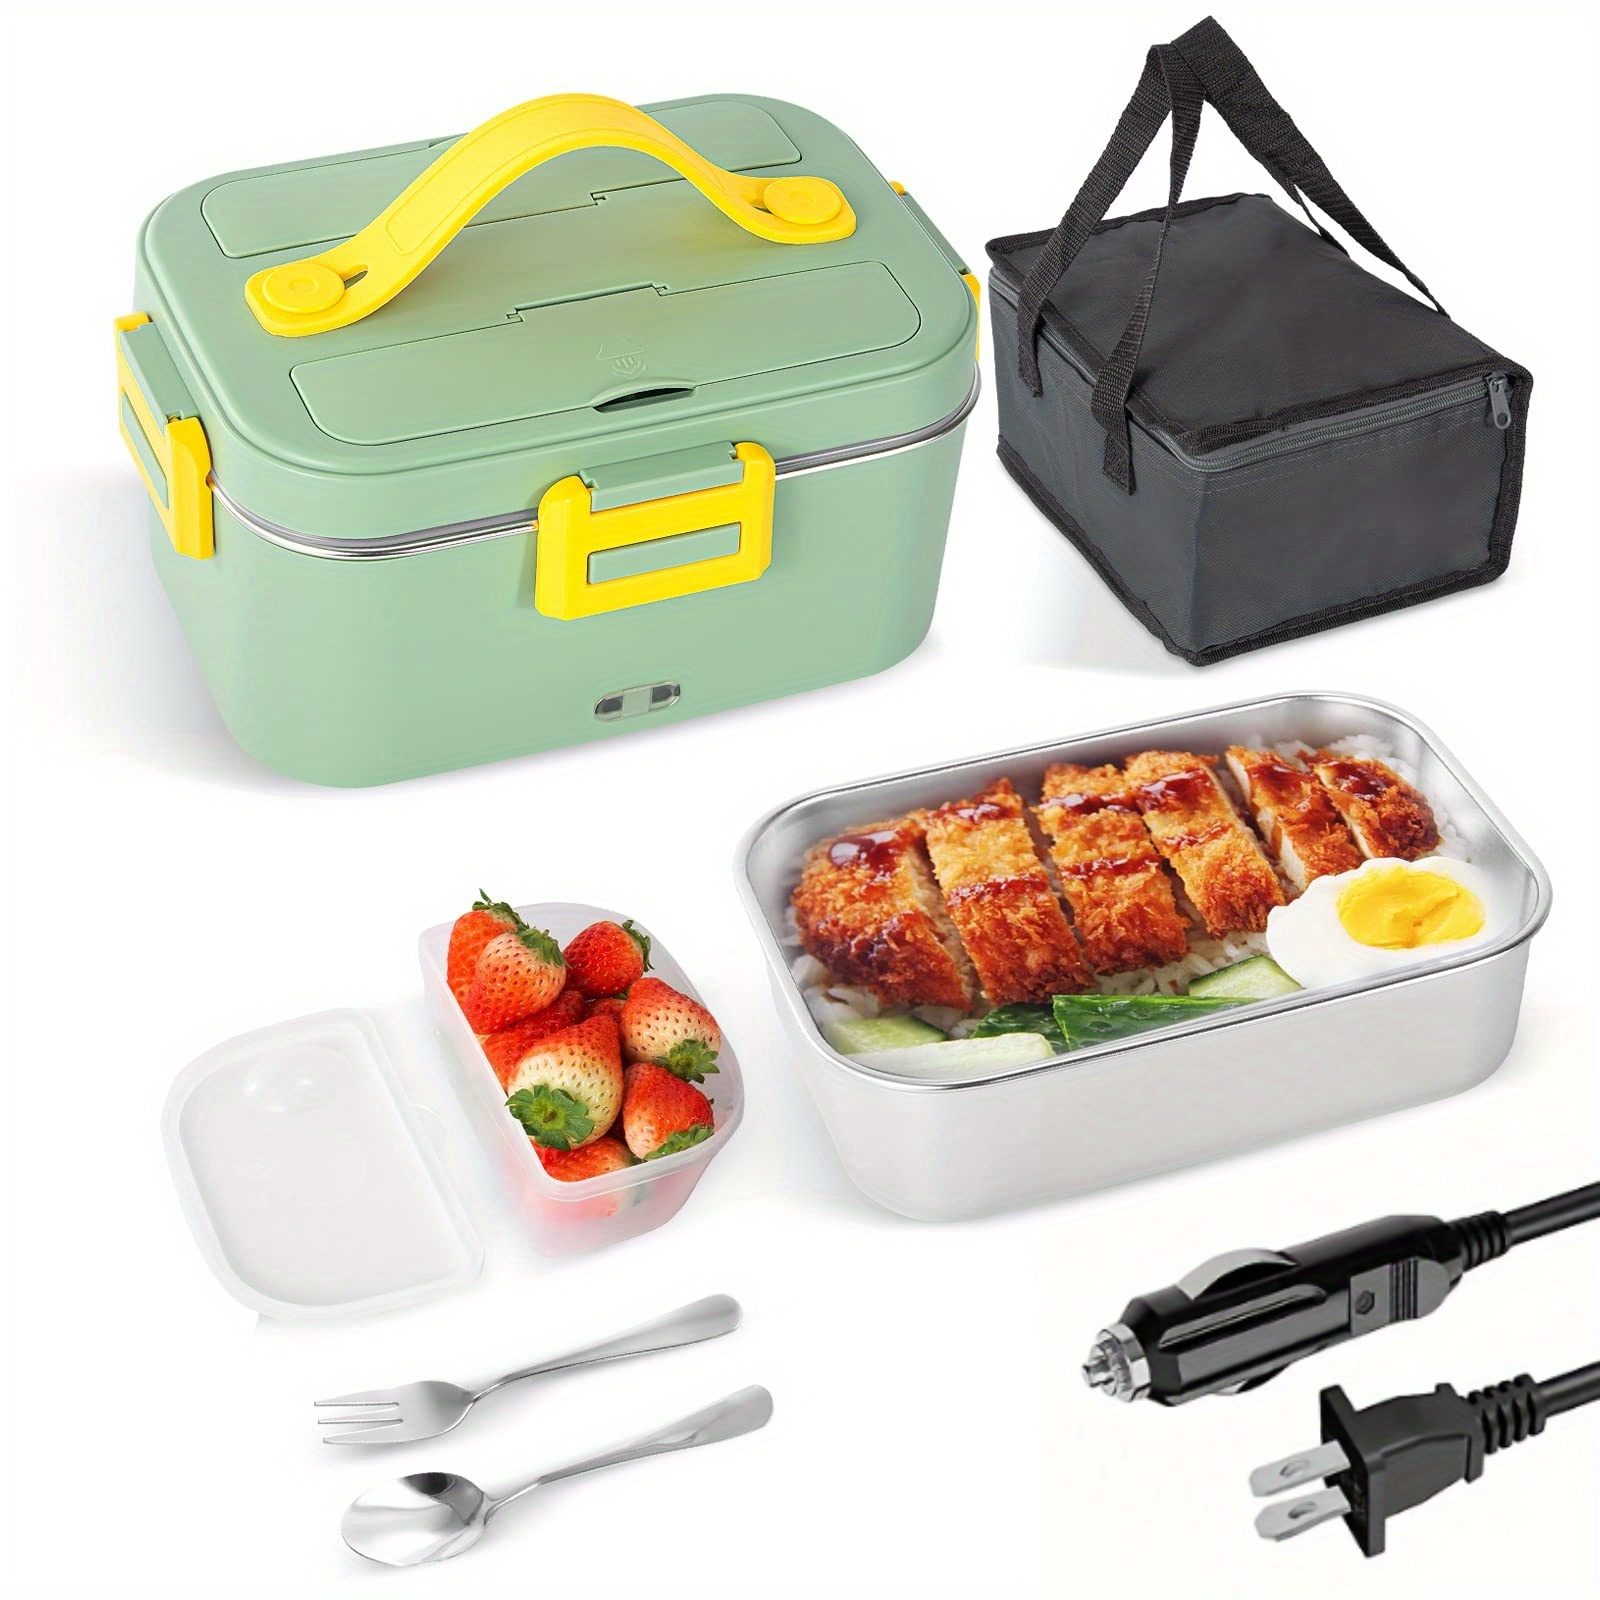 Caja de almuerzo eléctrica con calentador de comida portátil con rec